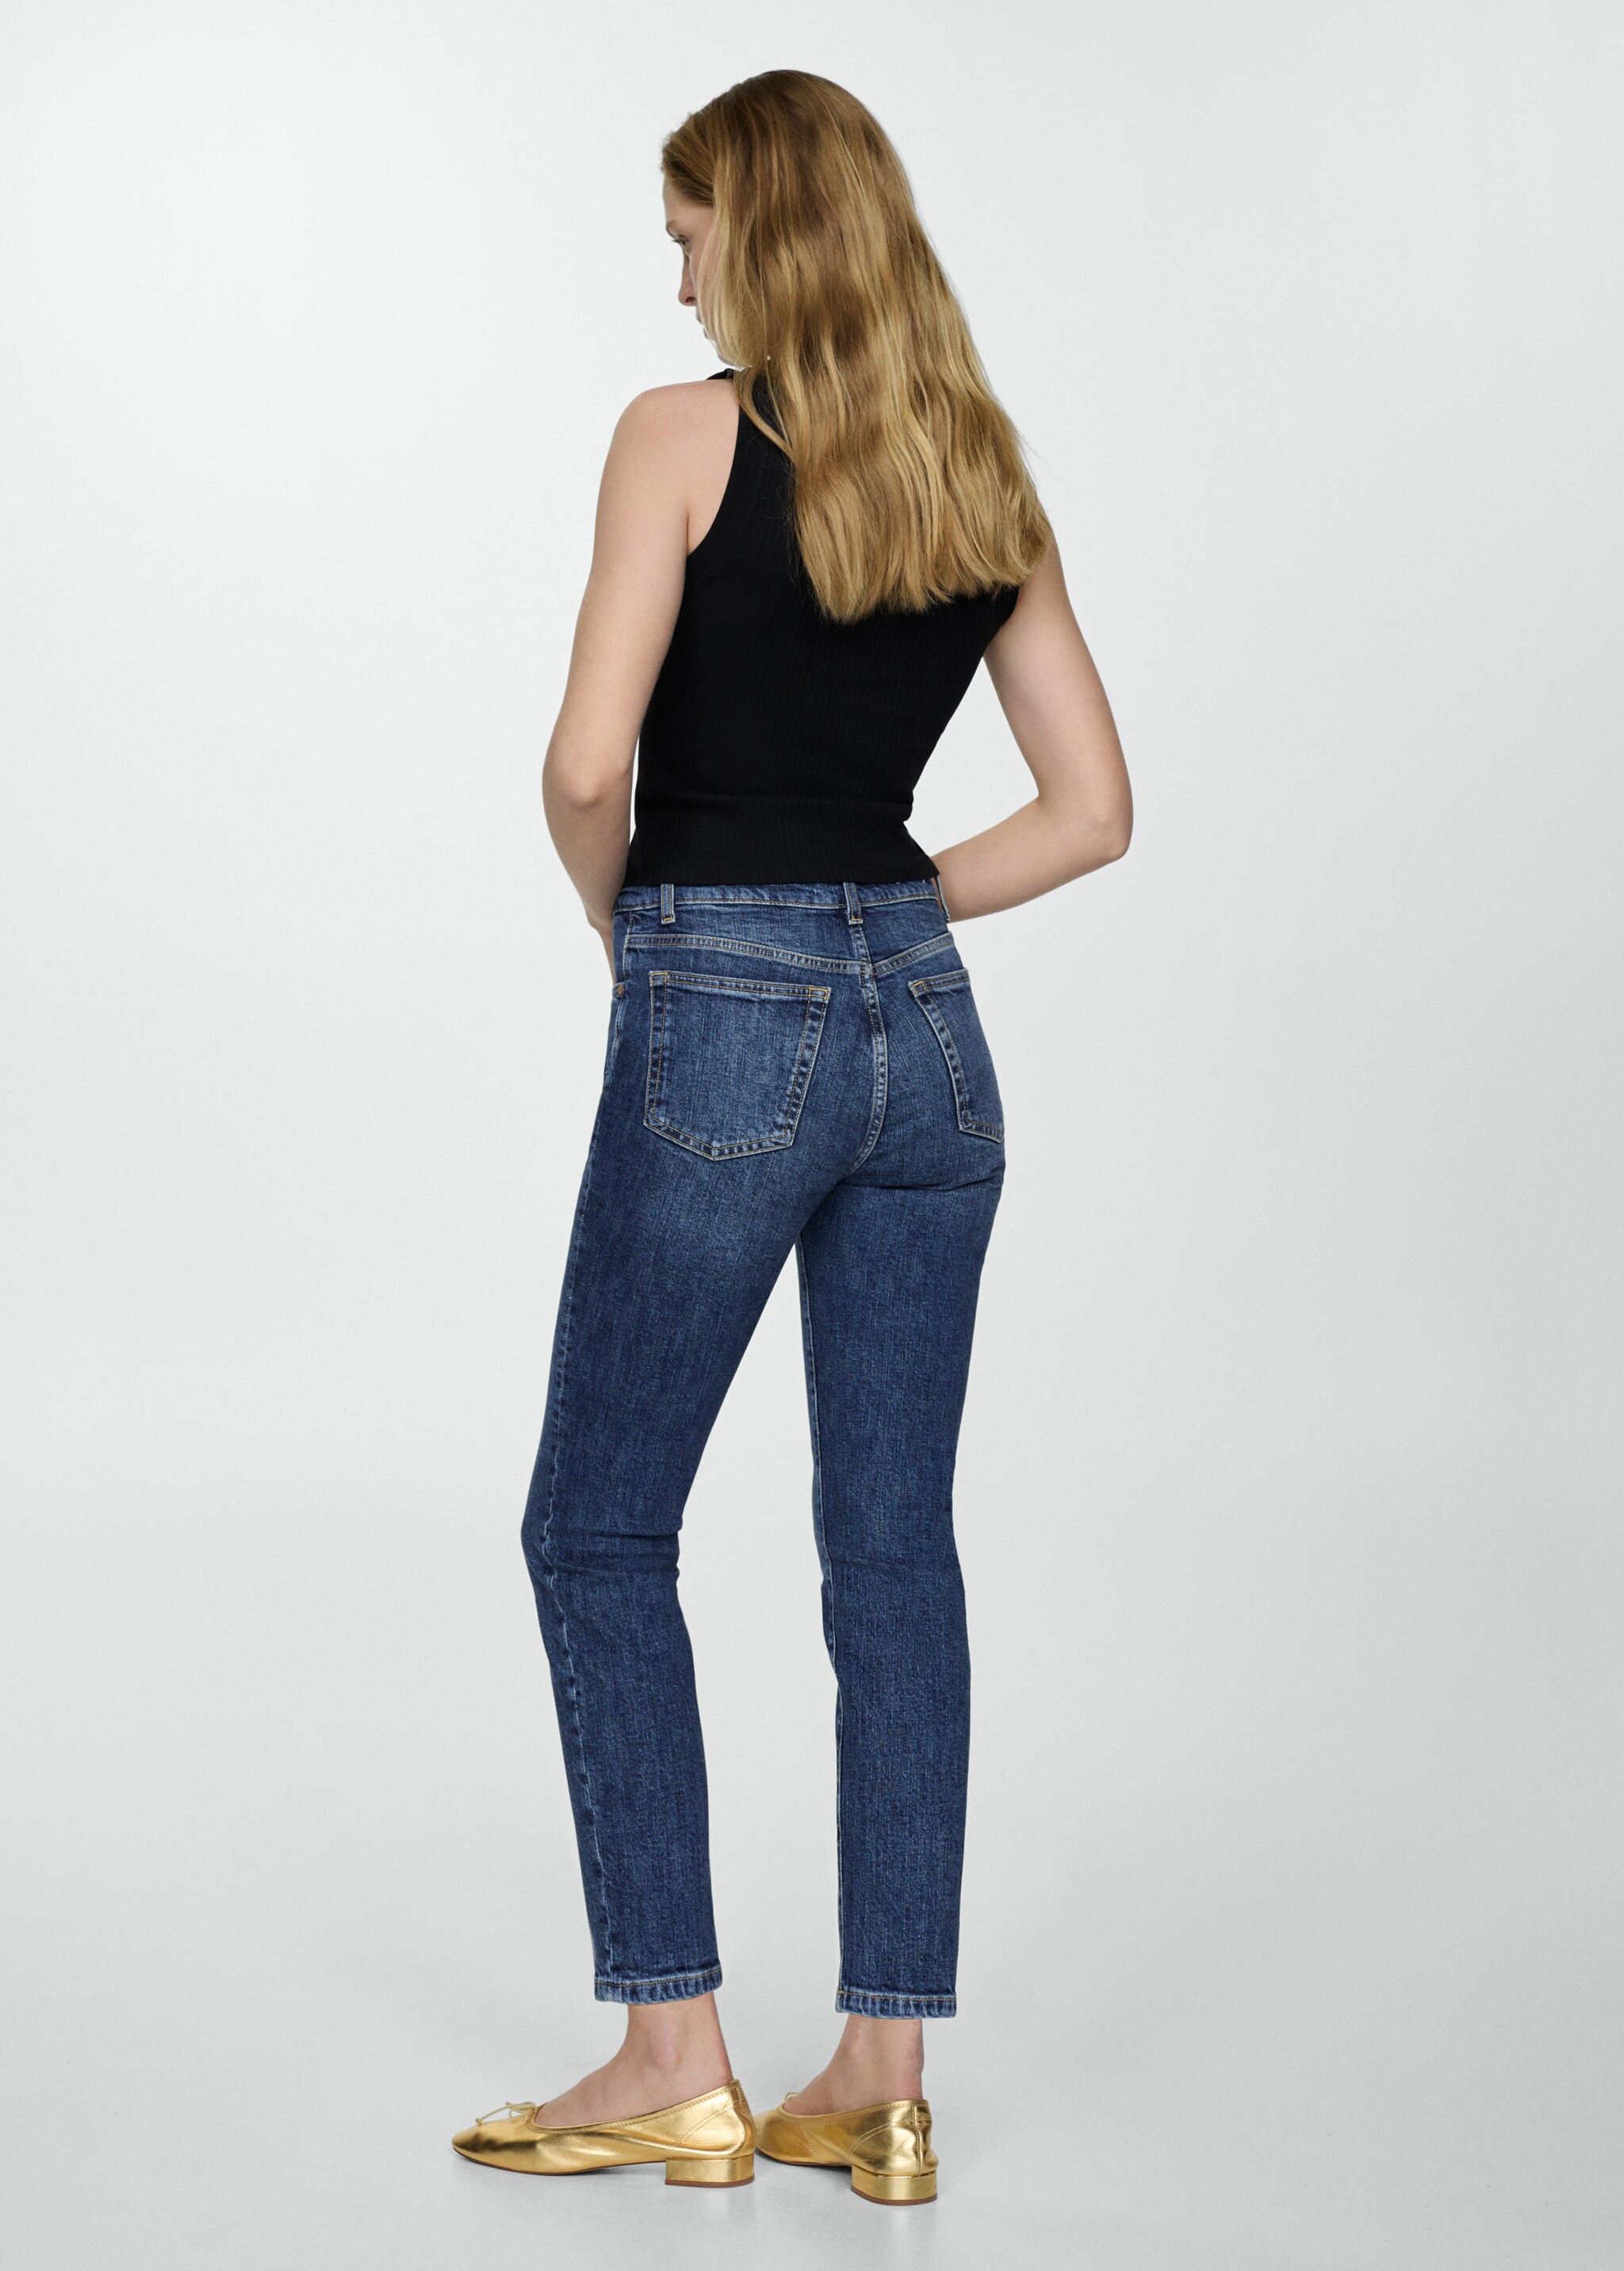 Jeans Claudia slim crop - Retro dell'articolo